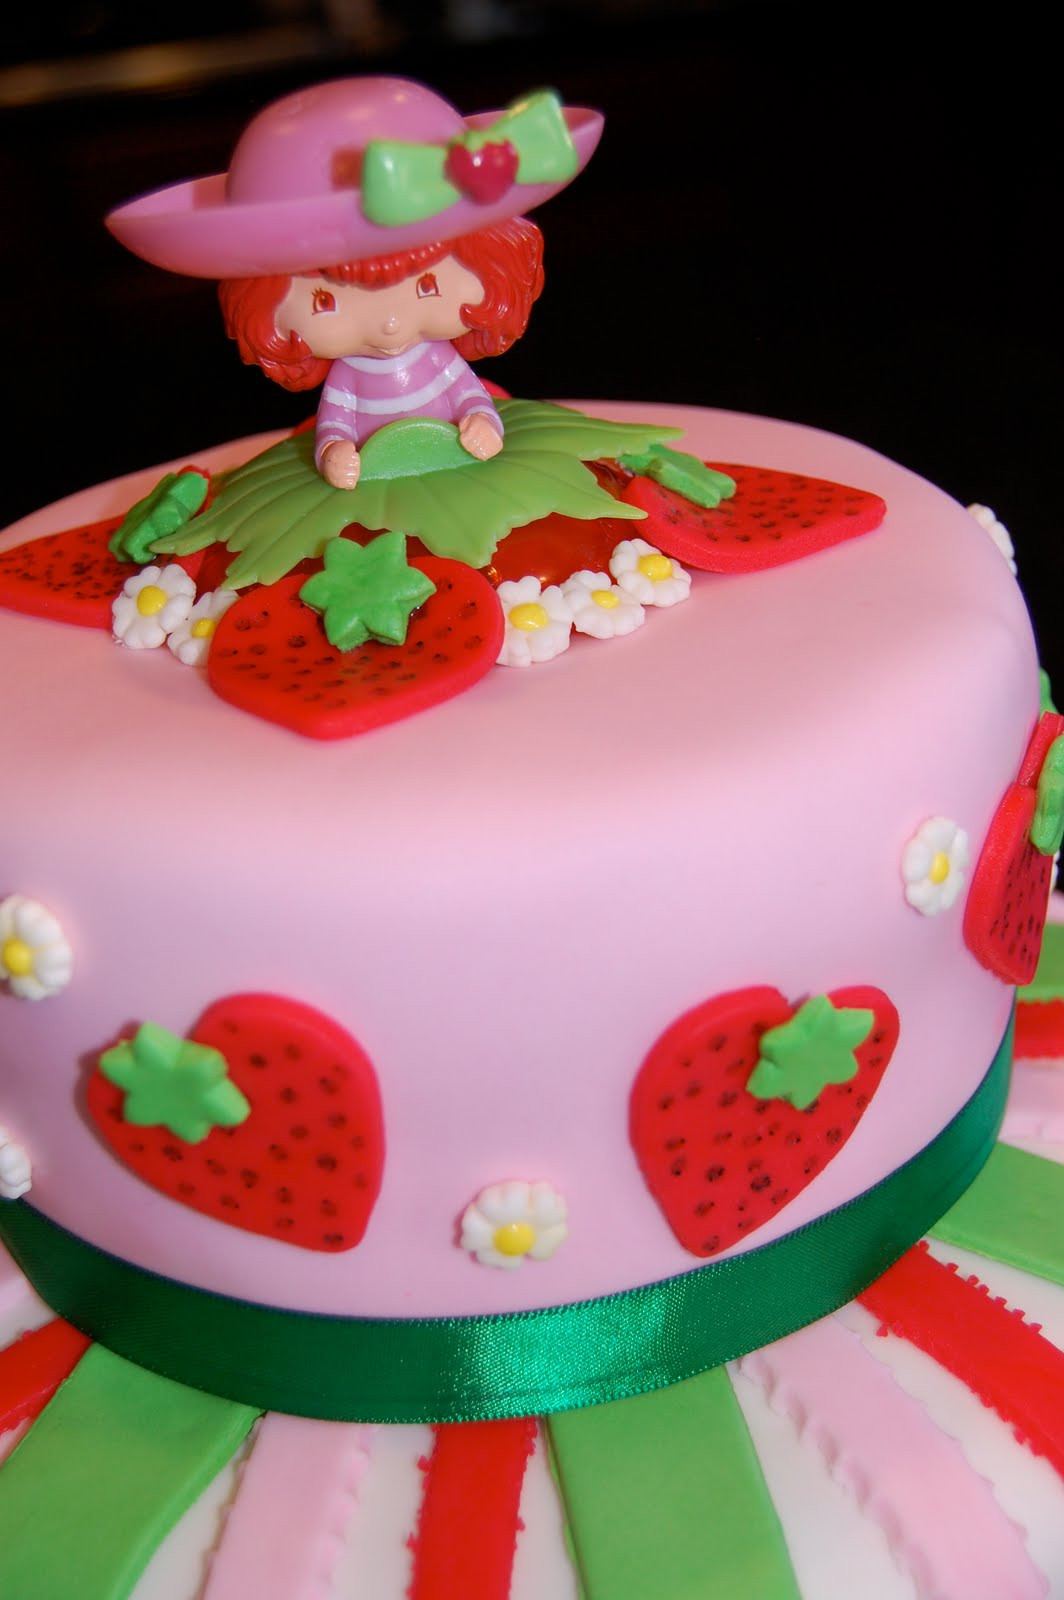 Strawberry Shortcake Birthday Cake
 MKHKKH Strawberry Shortcake Cake